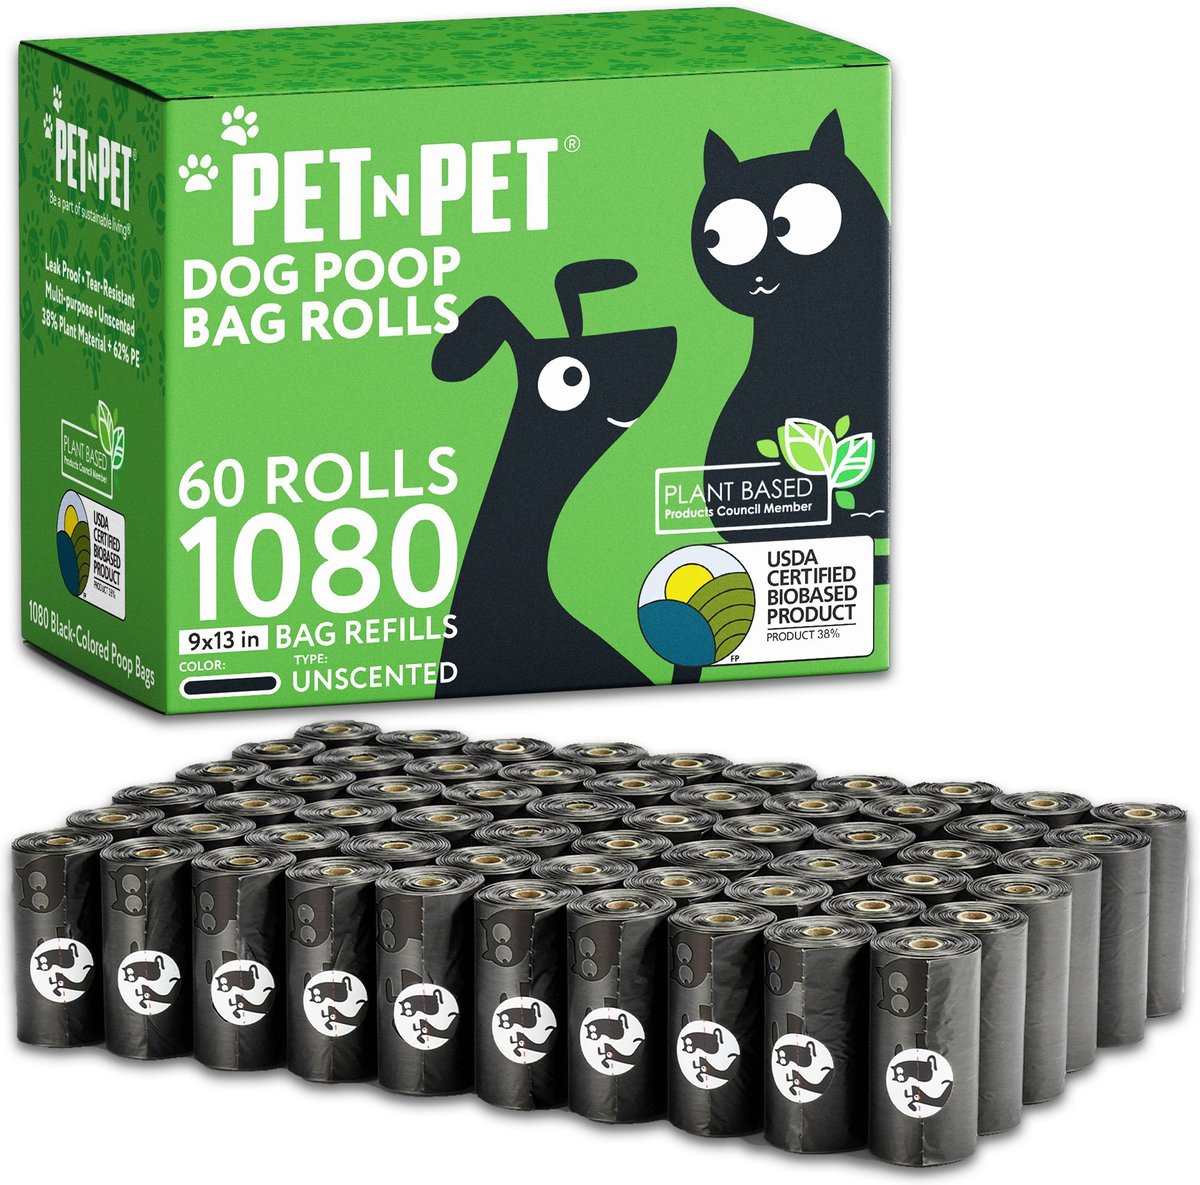 PET N PET Dog Poop Bag 100% Compostable Poop Bags Vegetable-Based Corn  Starch Dog Poop Bags Unscented Poop Bags Refill Rolls - Walmart.com